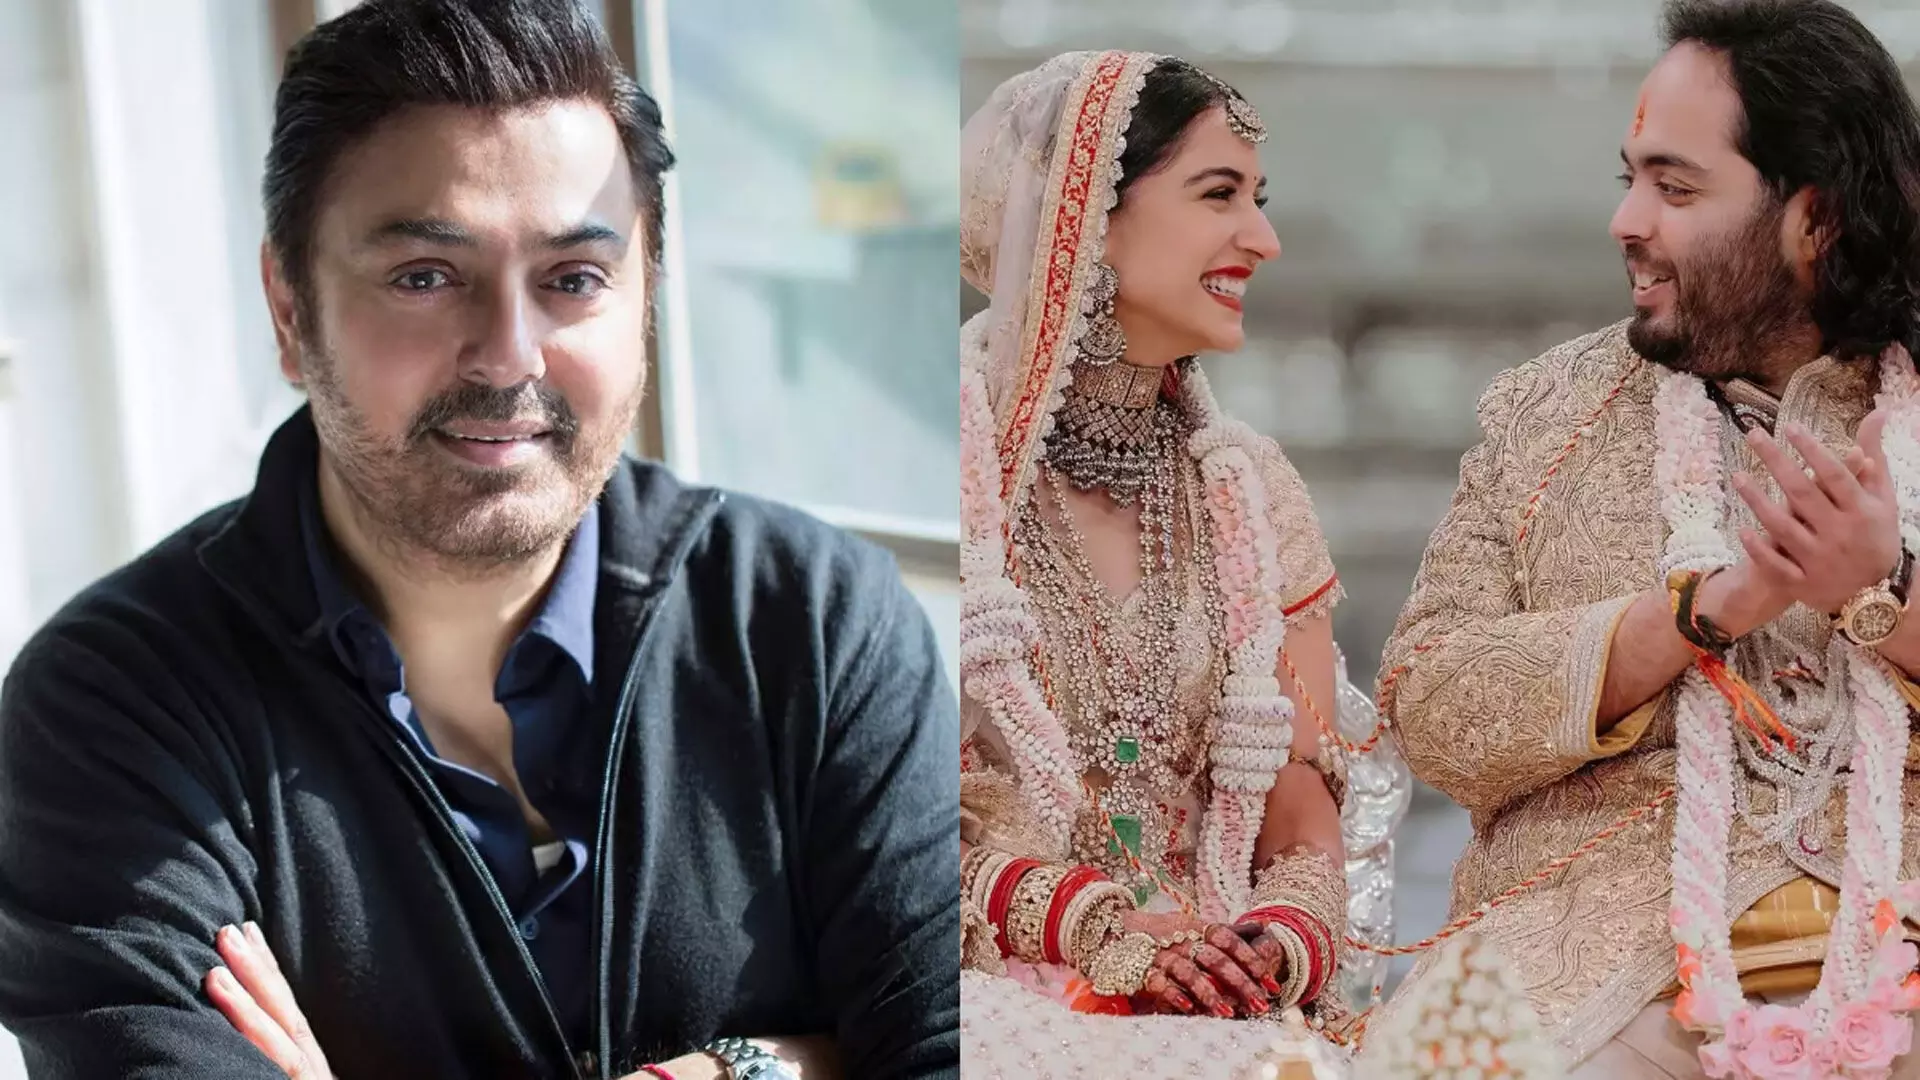 Pak अभिनेता ने अनंत अंबानी की शादी की आलोचना करने वालों को लगाई फटकार